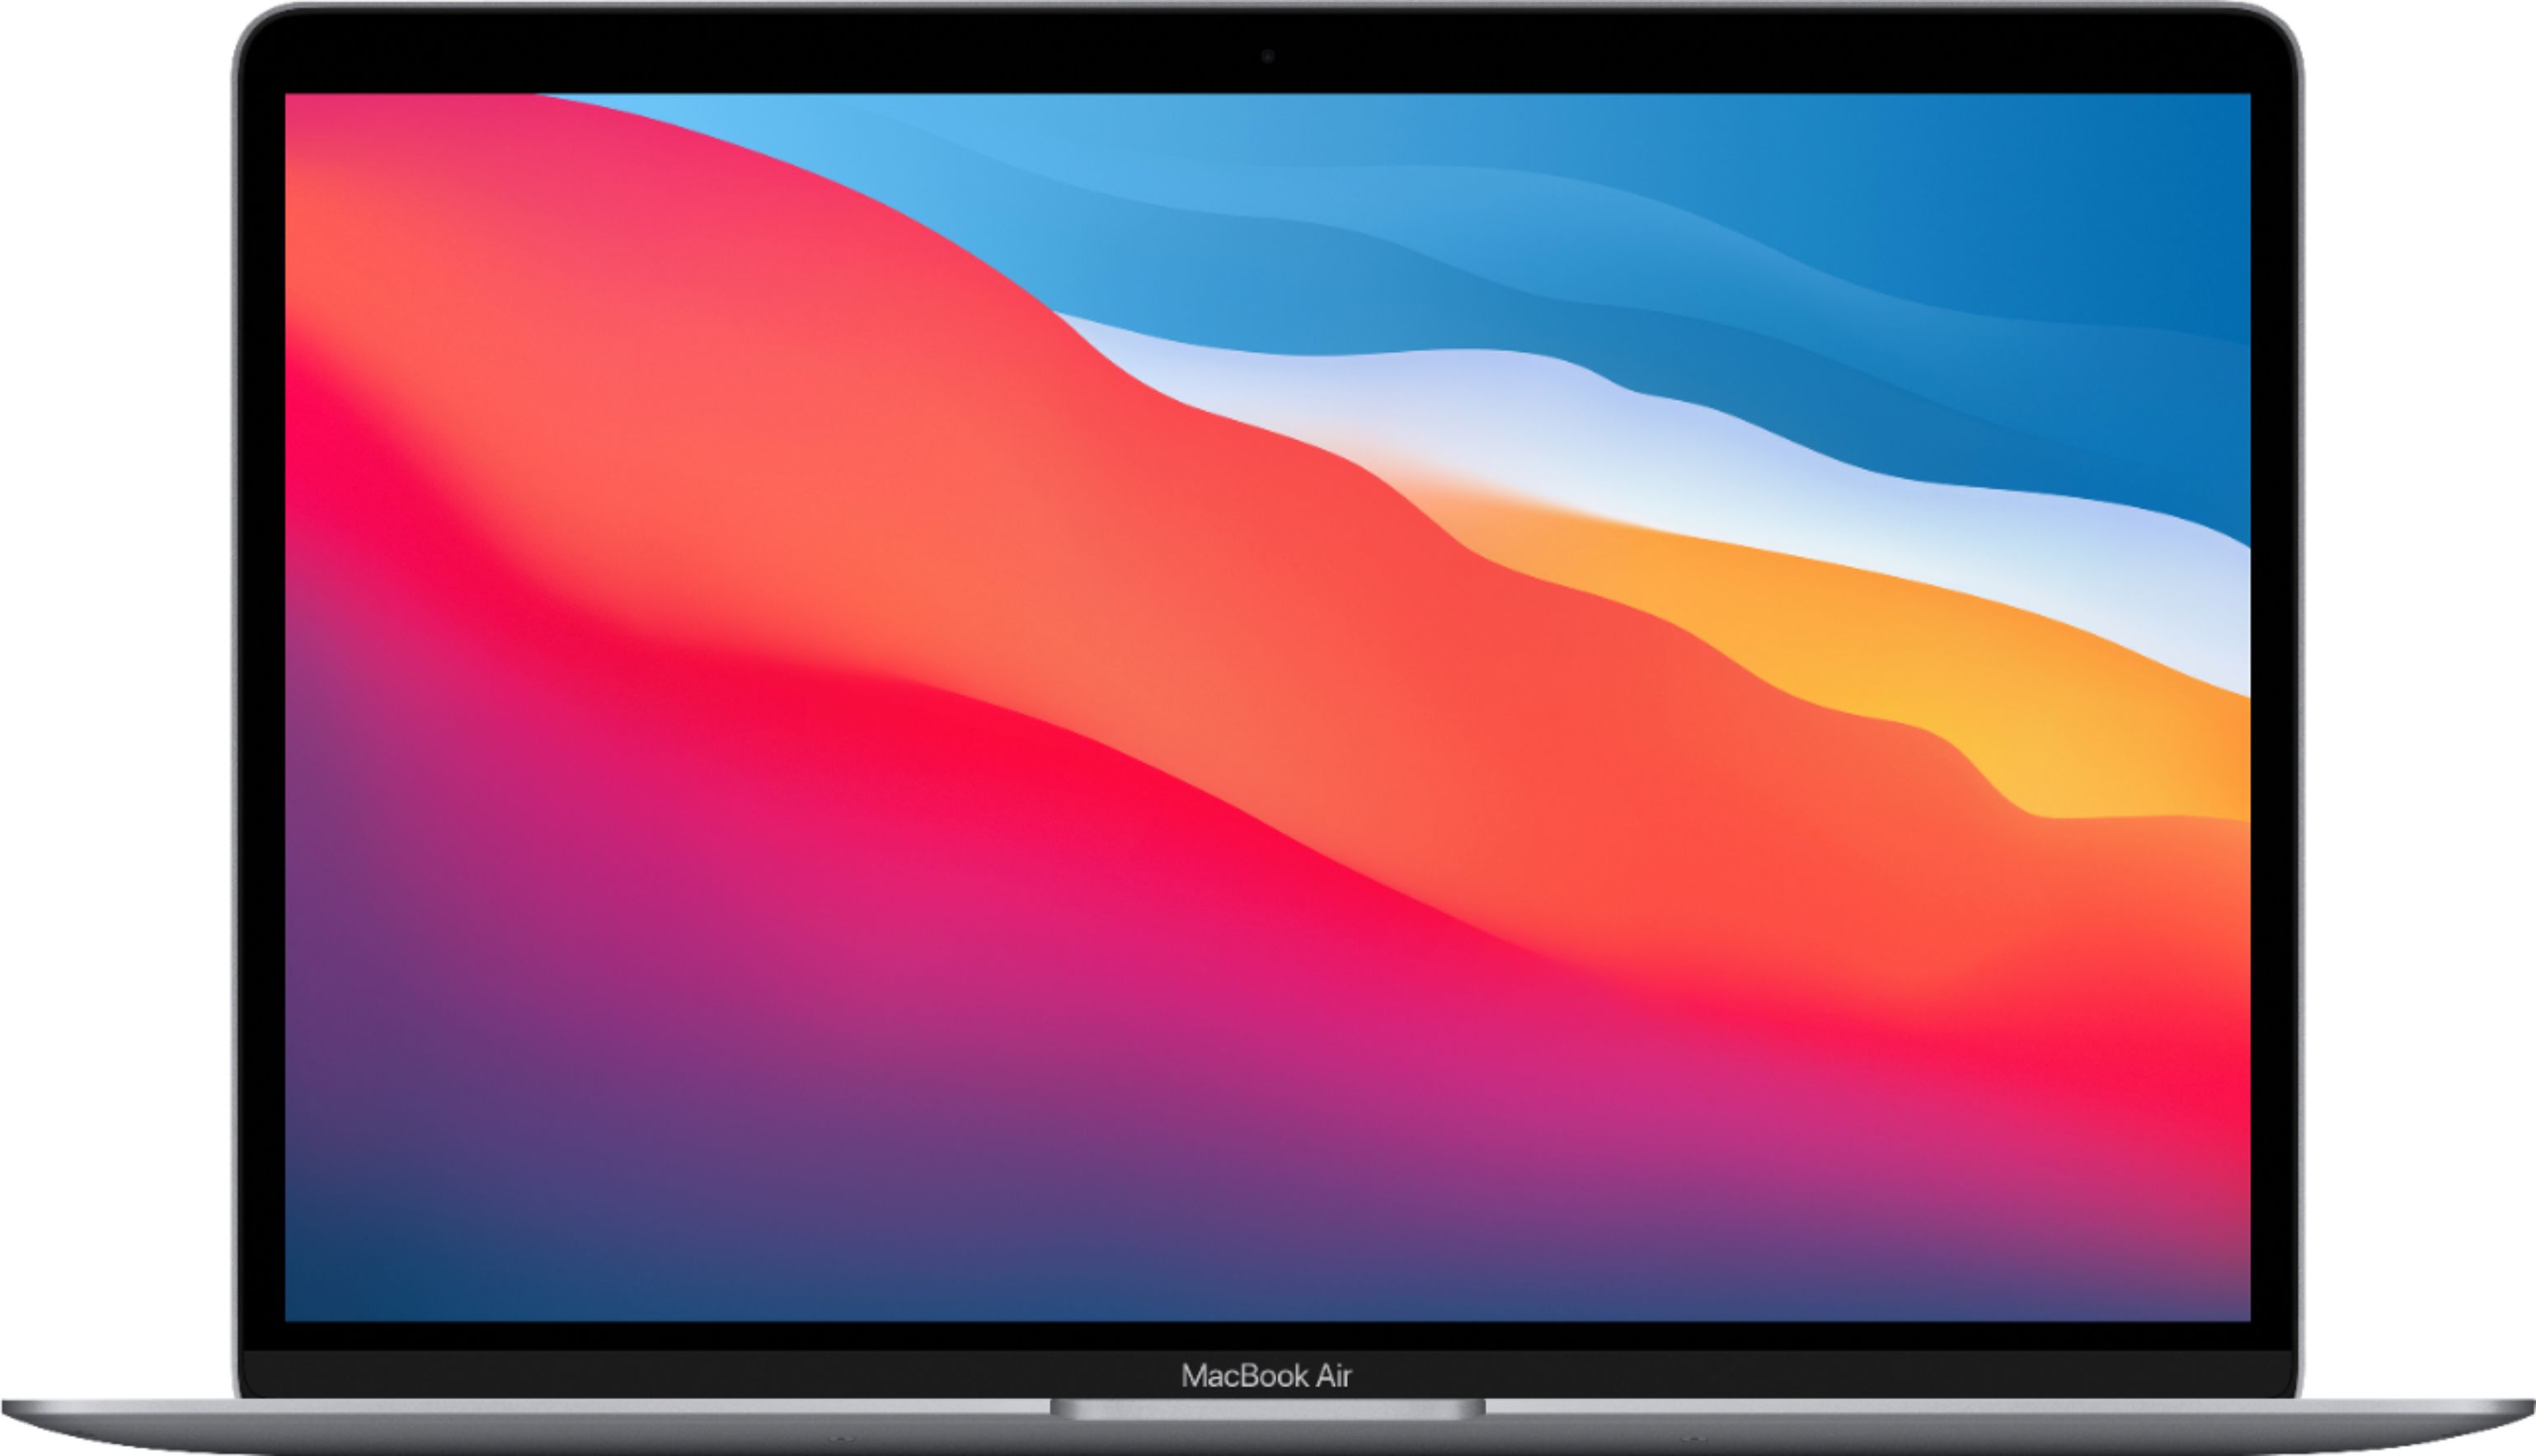 MacBook Air 13.3" Laptop - Apple M1 chip - 8GB Memory - 256GB SSD - $650 @ Best Buy